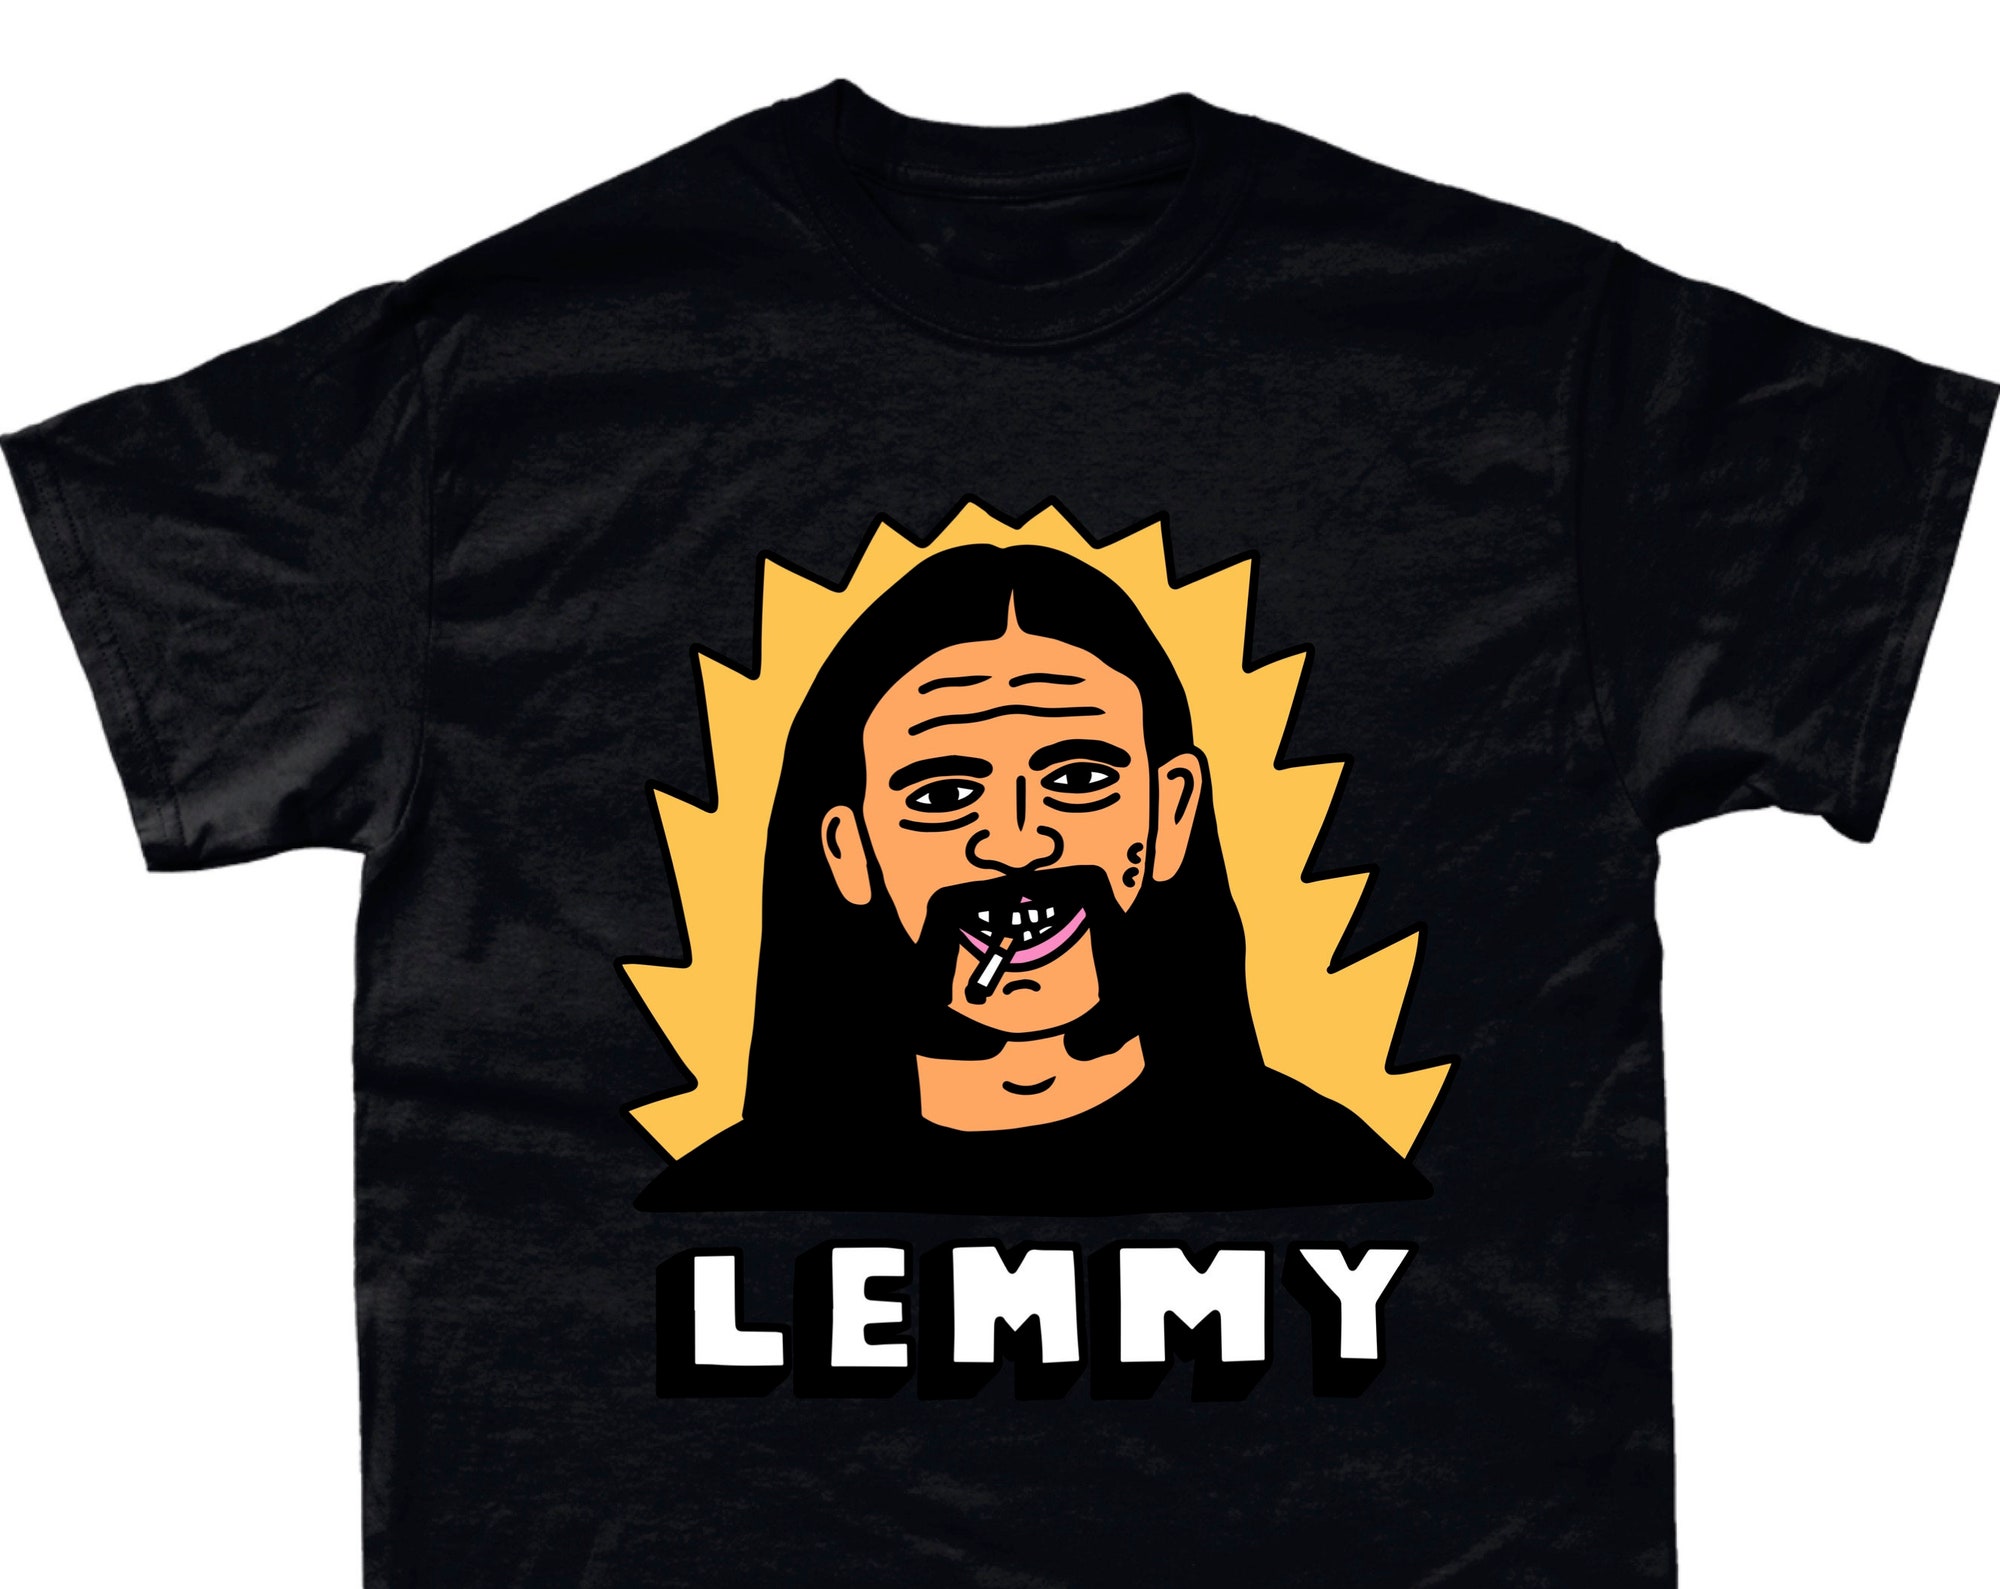 Lemmy motorhead shirt